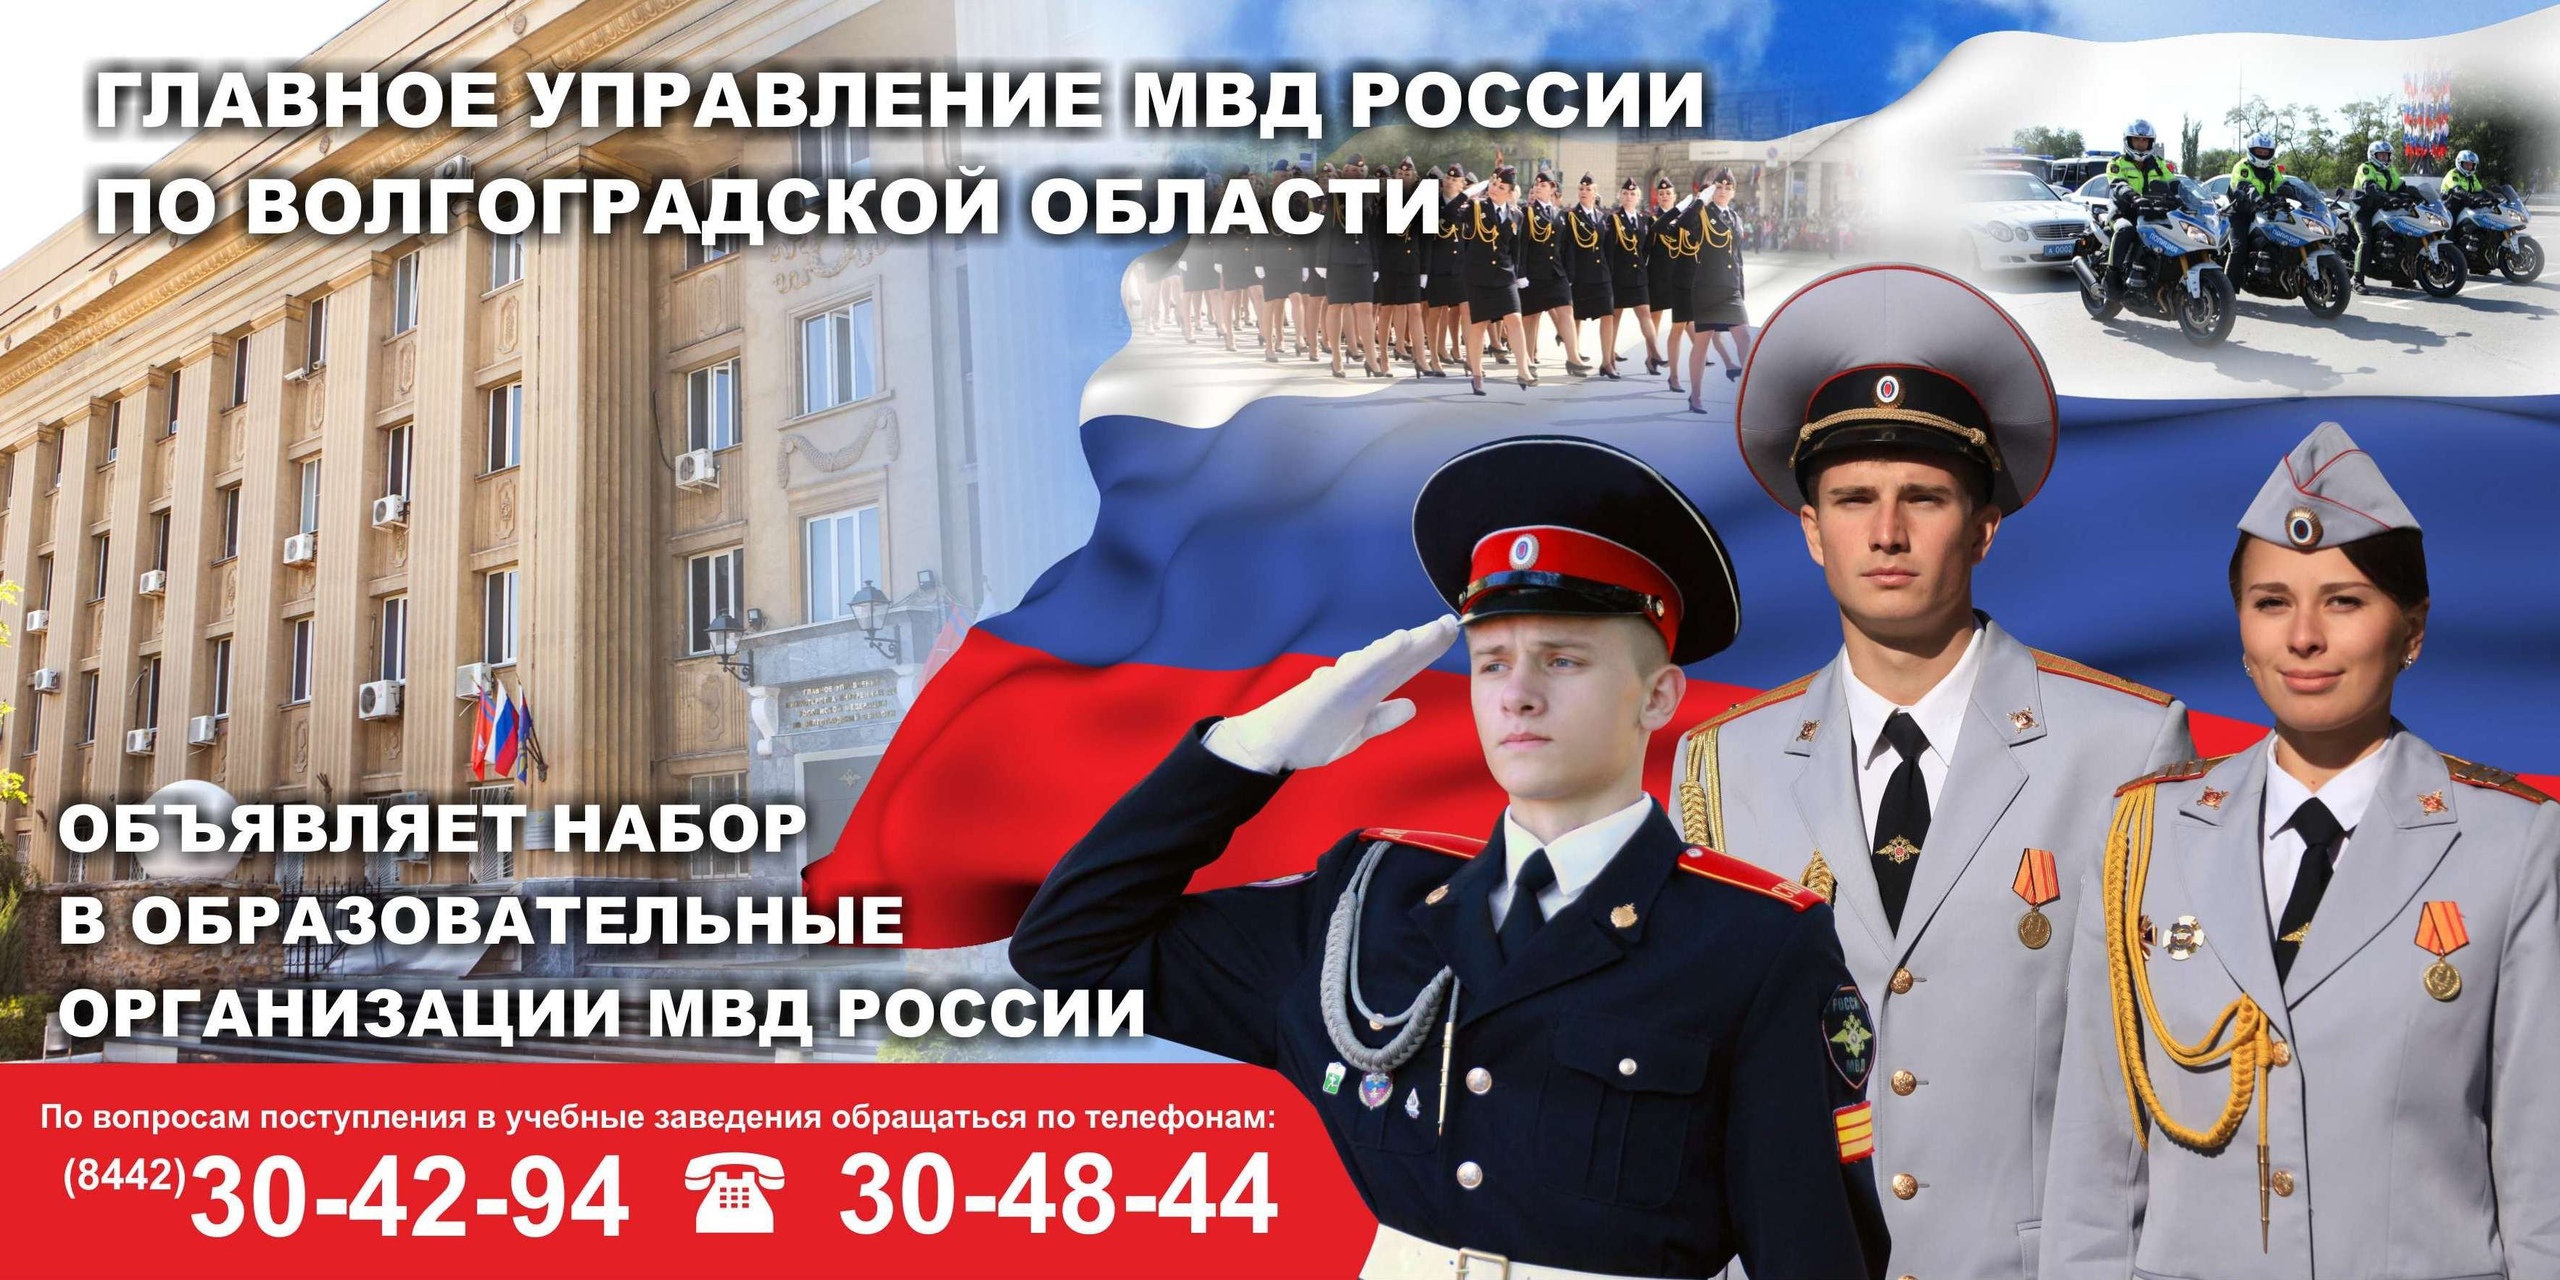 ОМВД России по Нефтеюганскому району объявляет набор юношей и девушек для поступления в высшие учебные заведения.